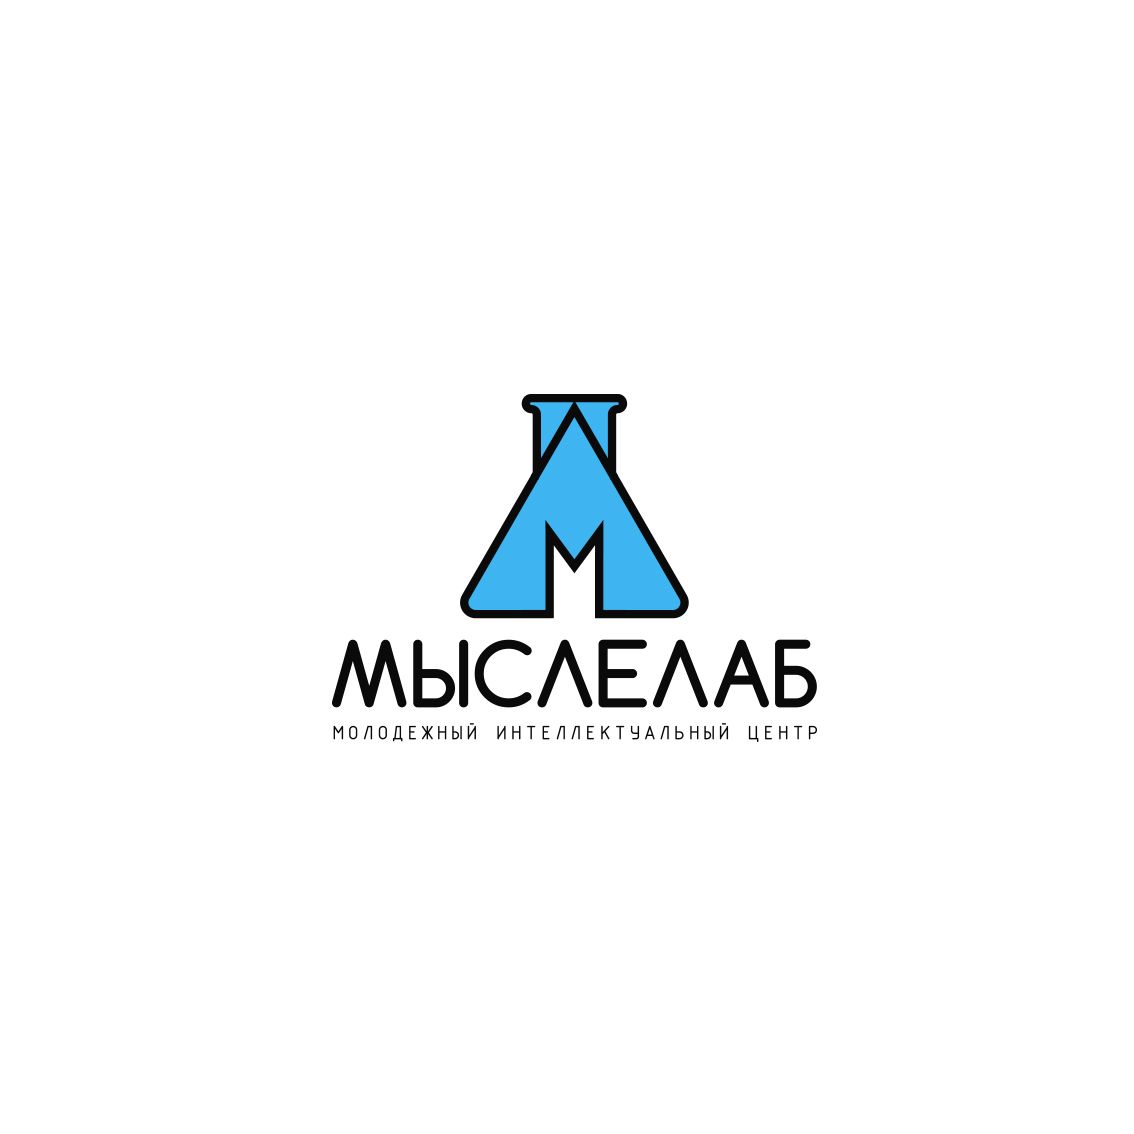 Мыслелаб! Логотип для интеллектуального центра - дизайнер mkravchenko